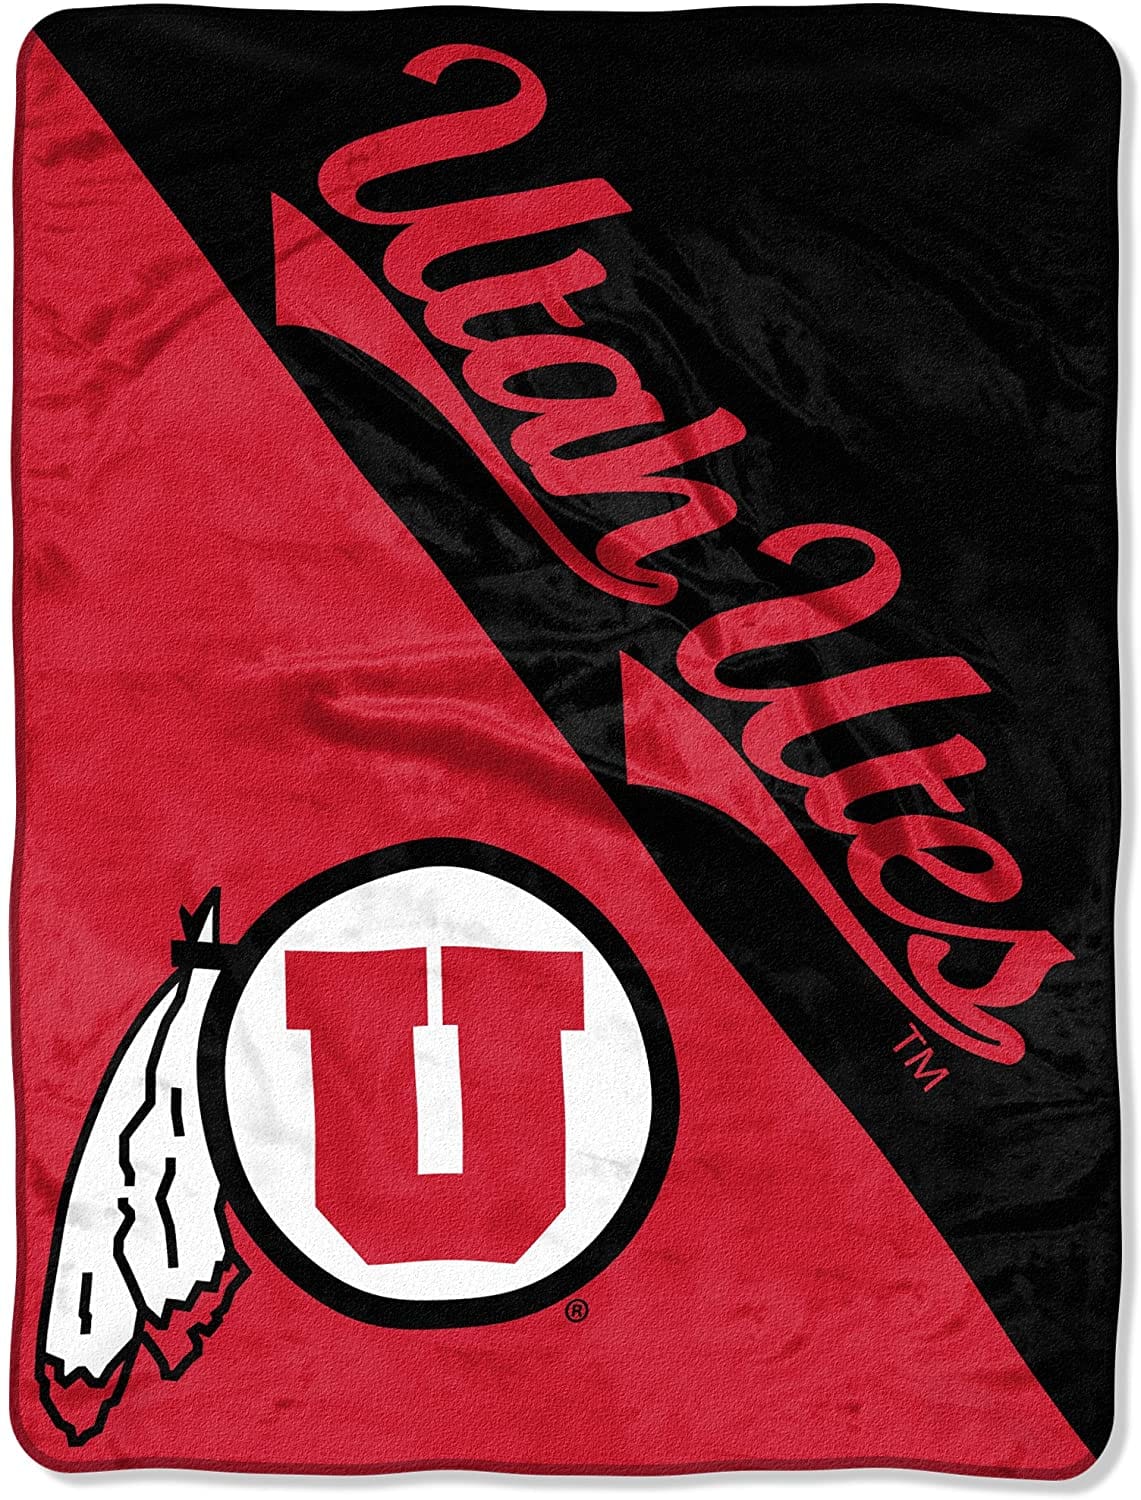 Ncaa Utah Utes Fleece Blanket